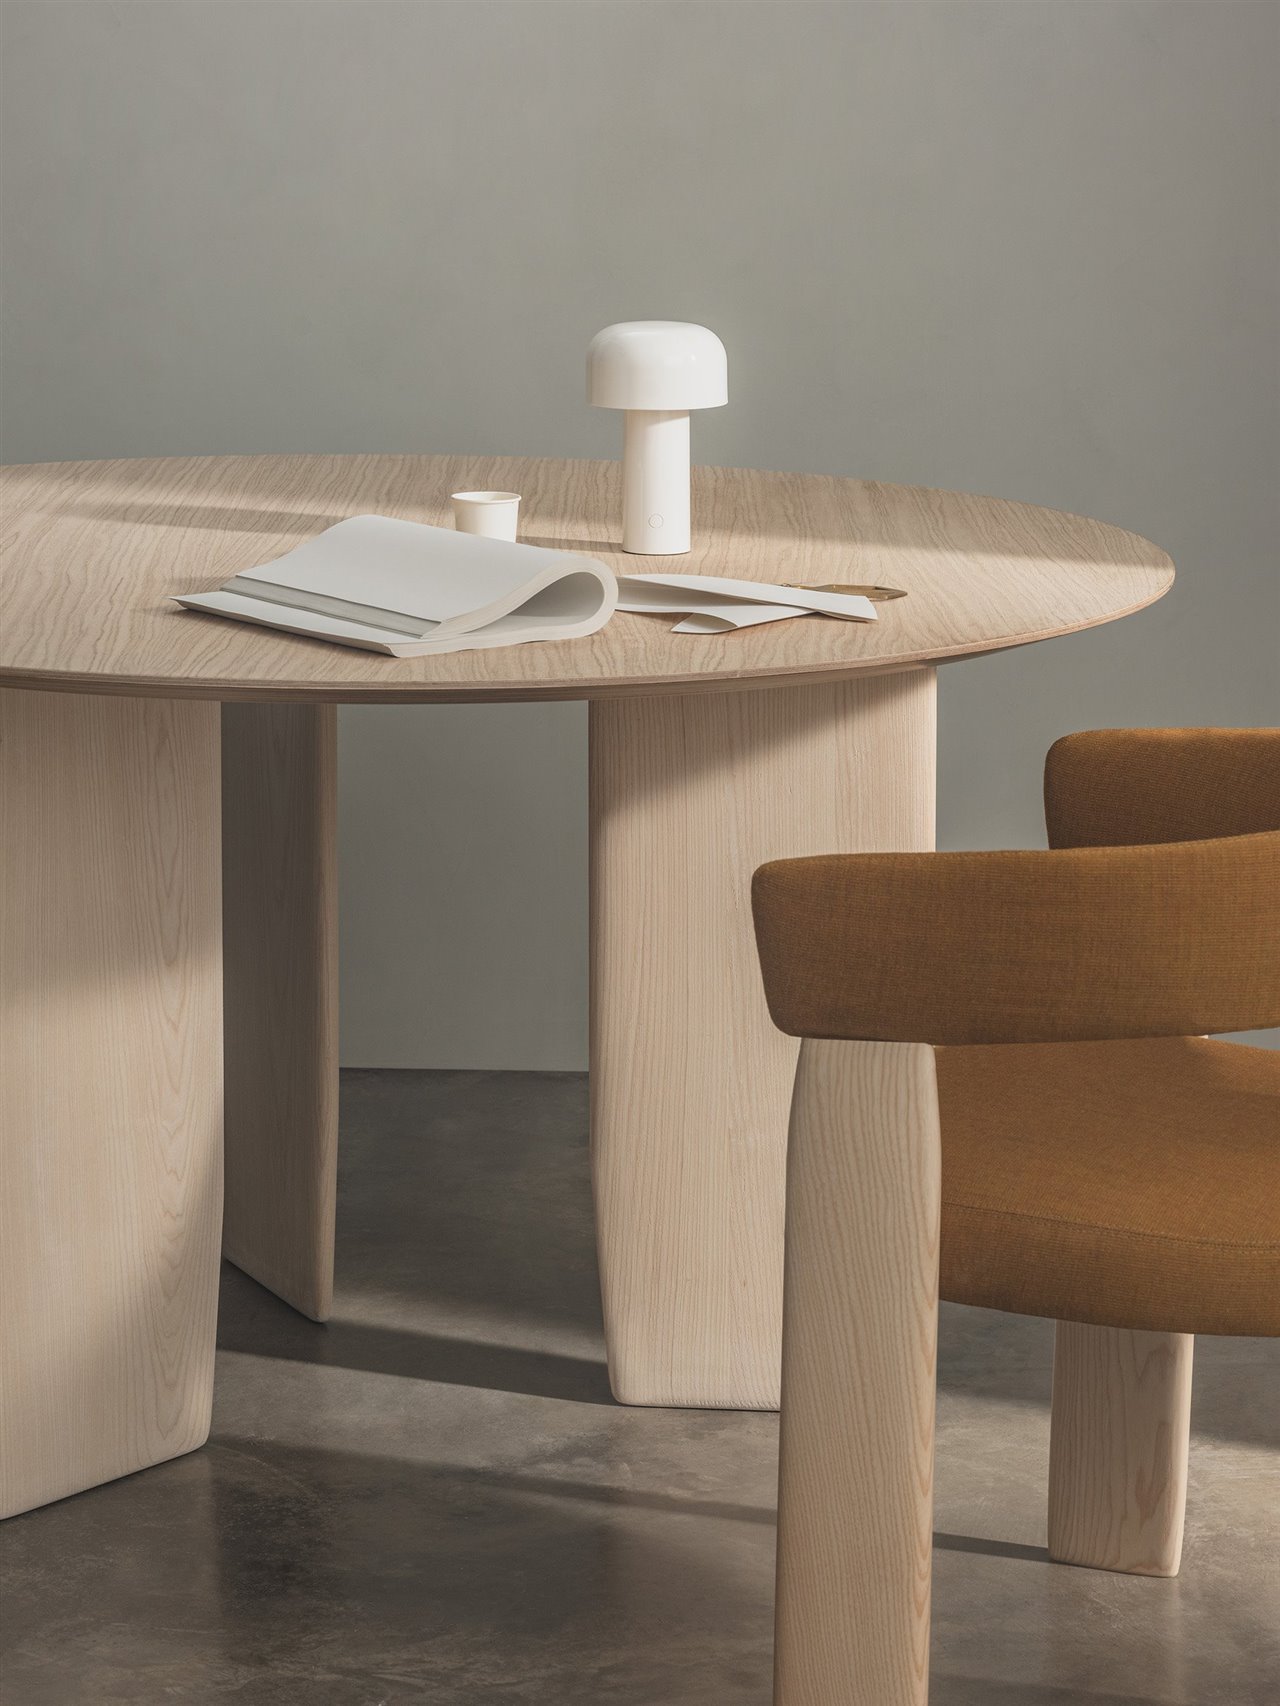 La mesa está fabricada con madera maciza y está disponible en diferentes tamaños y versiones de mesa café, comedor y auxiliares. 